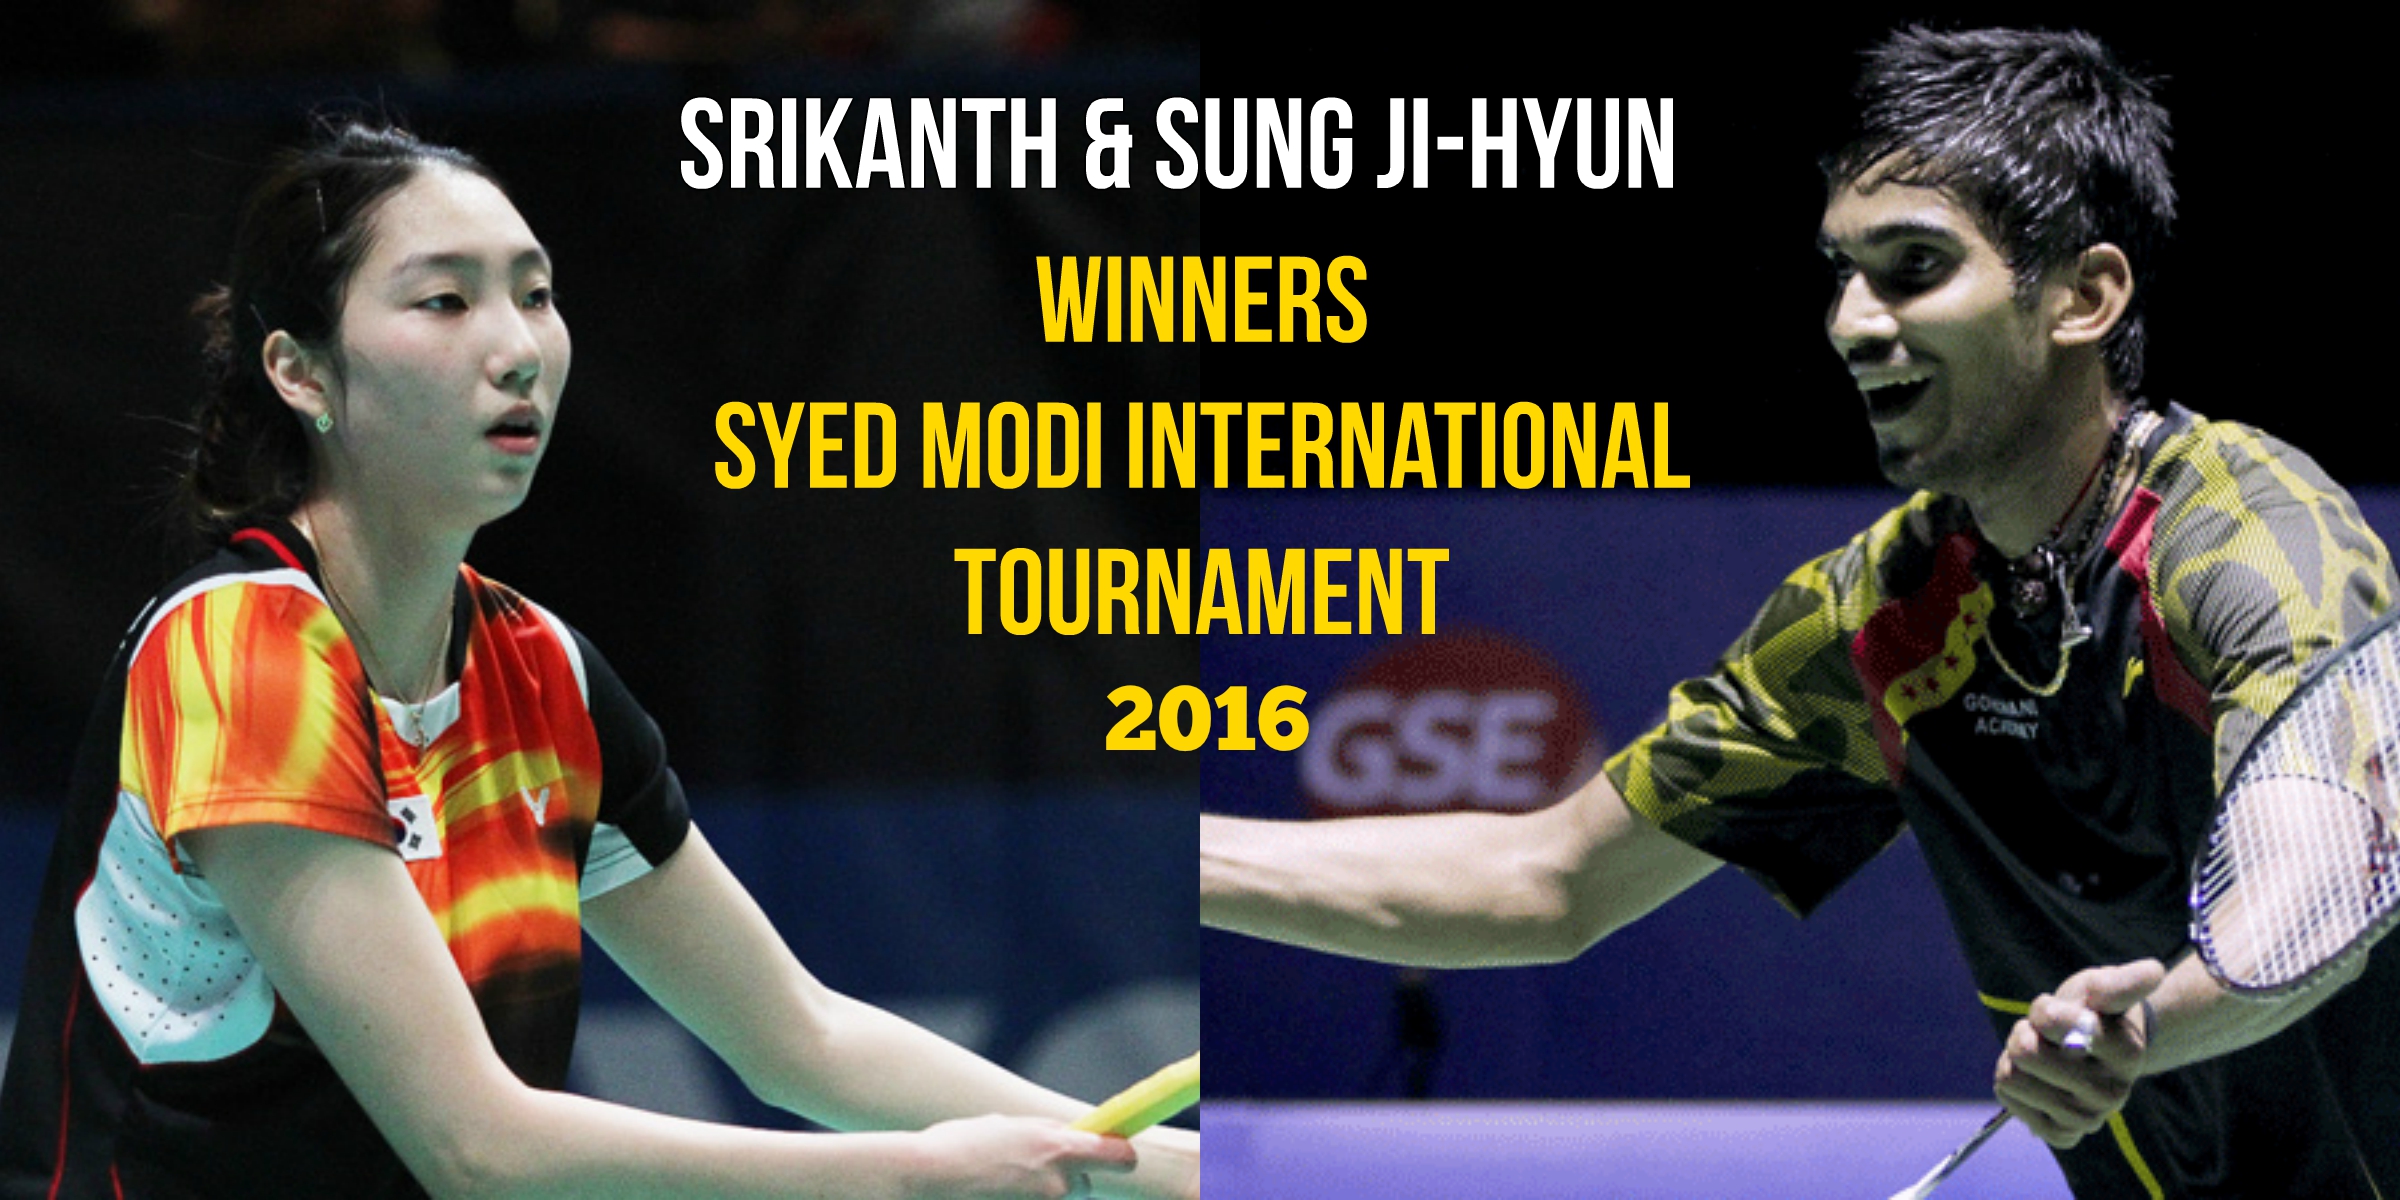 Srikanth Winners in 2016 Syed Modi International